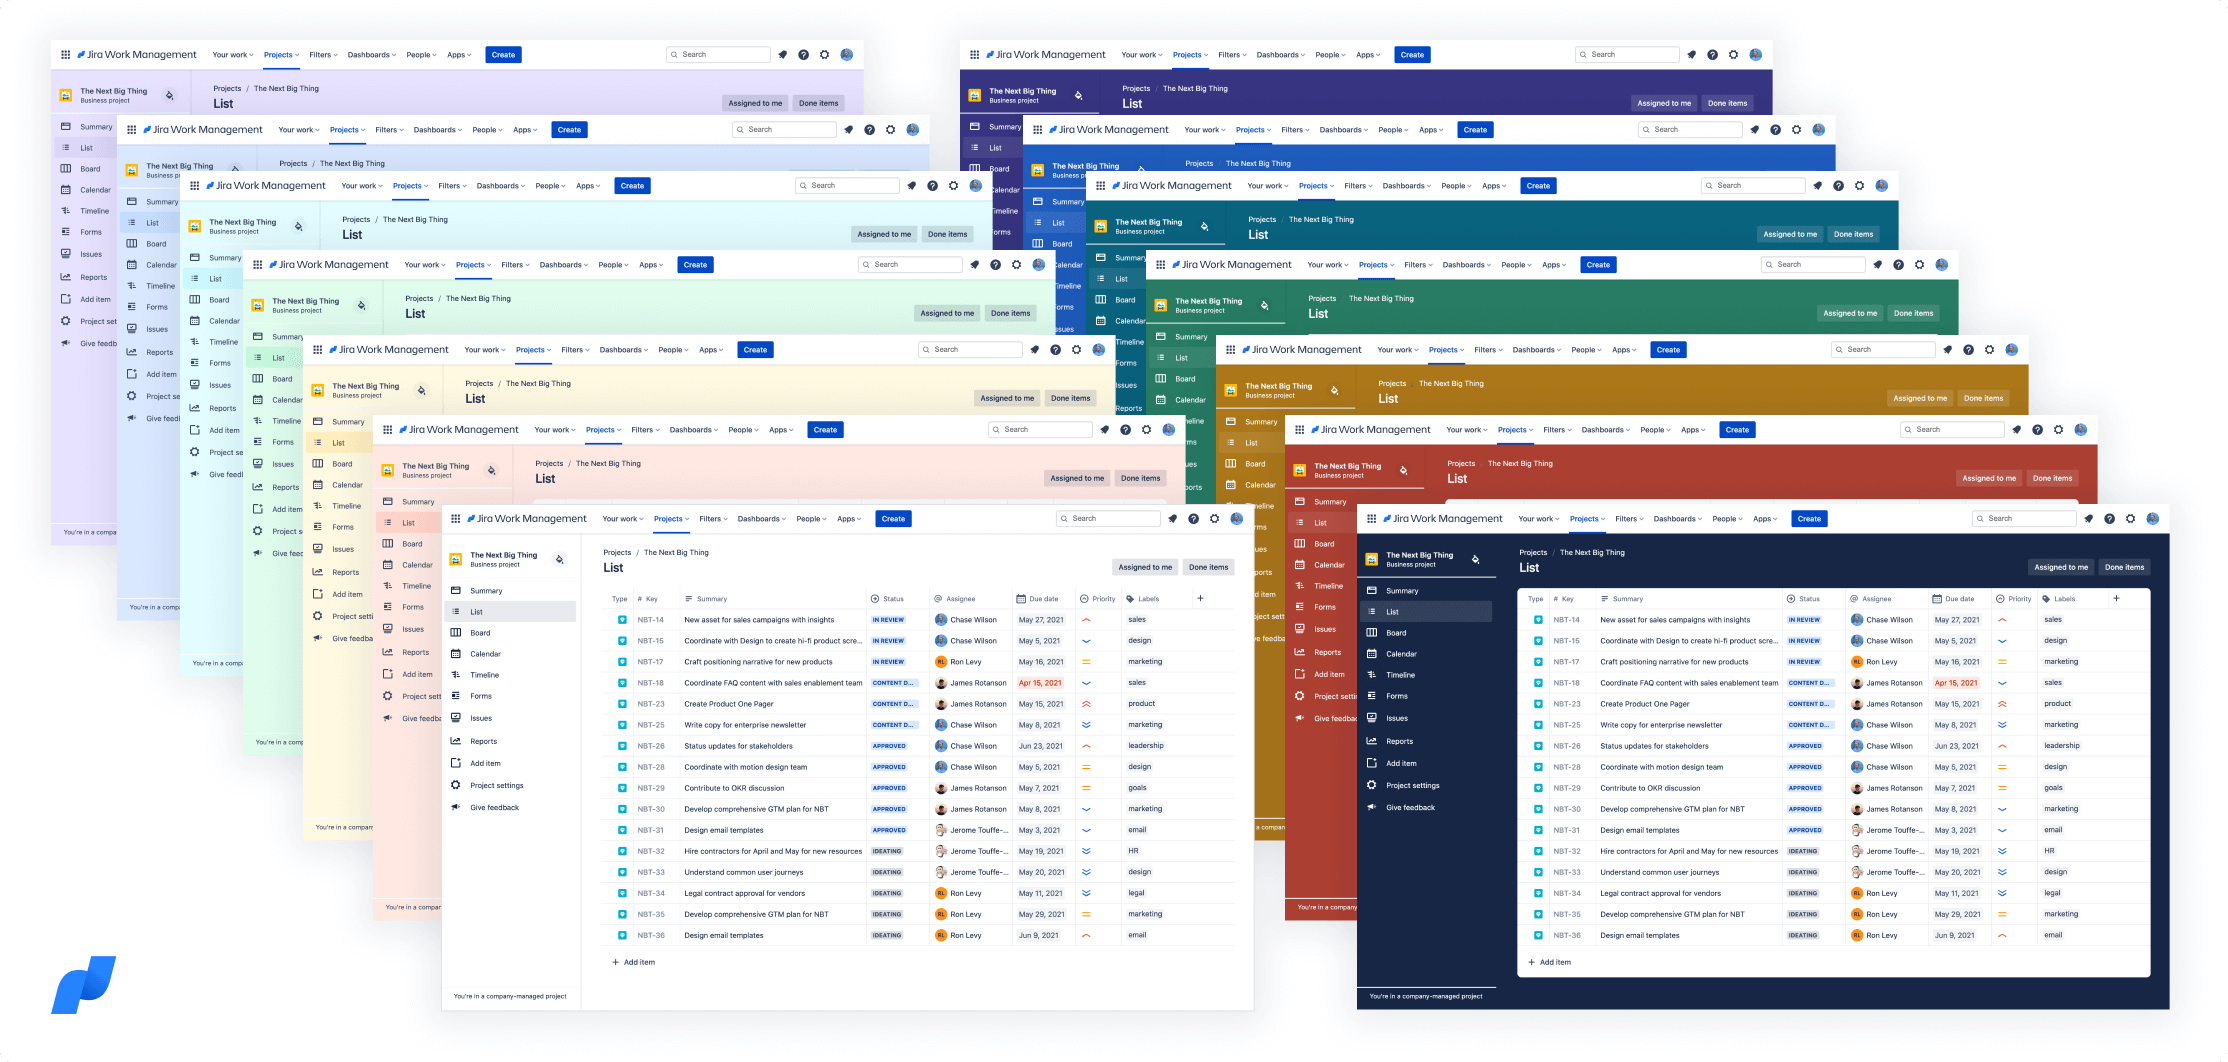 L'image montre des exemples des 14 couleurs disponibles pour les projets dans Jira Work Management.